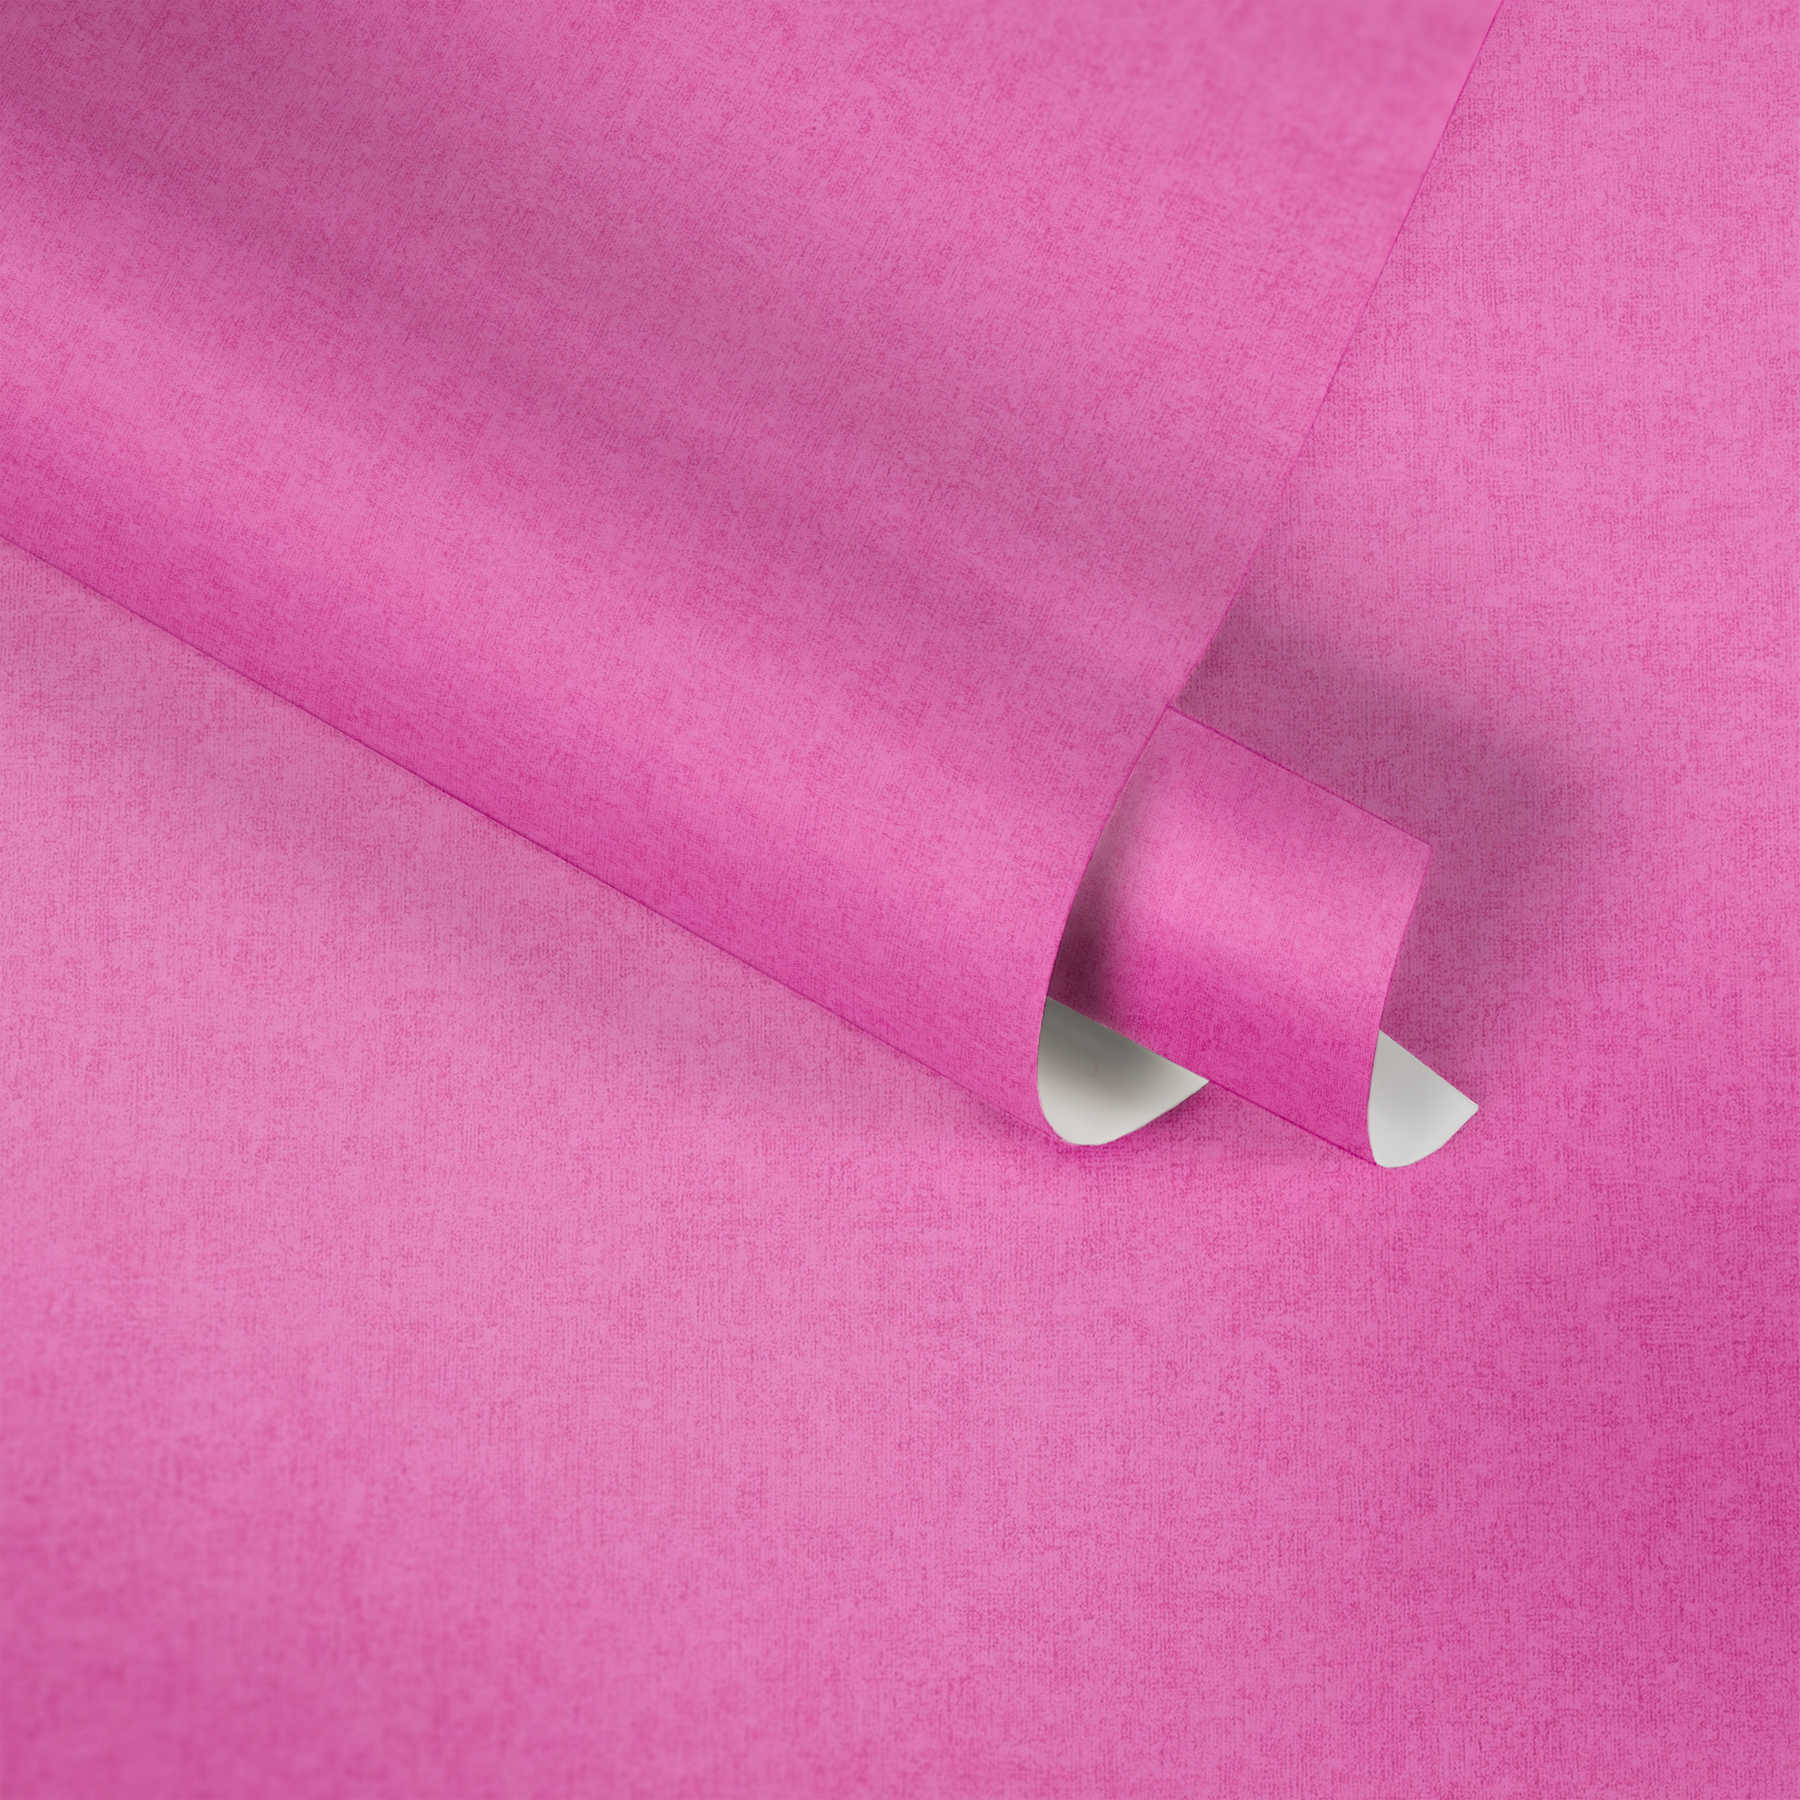             Kinderzimmer Tapete Pink für Mädchen, einfarbig
        